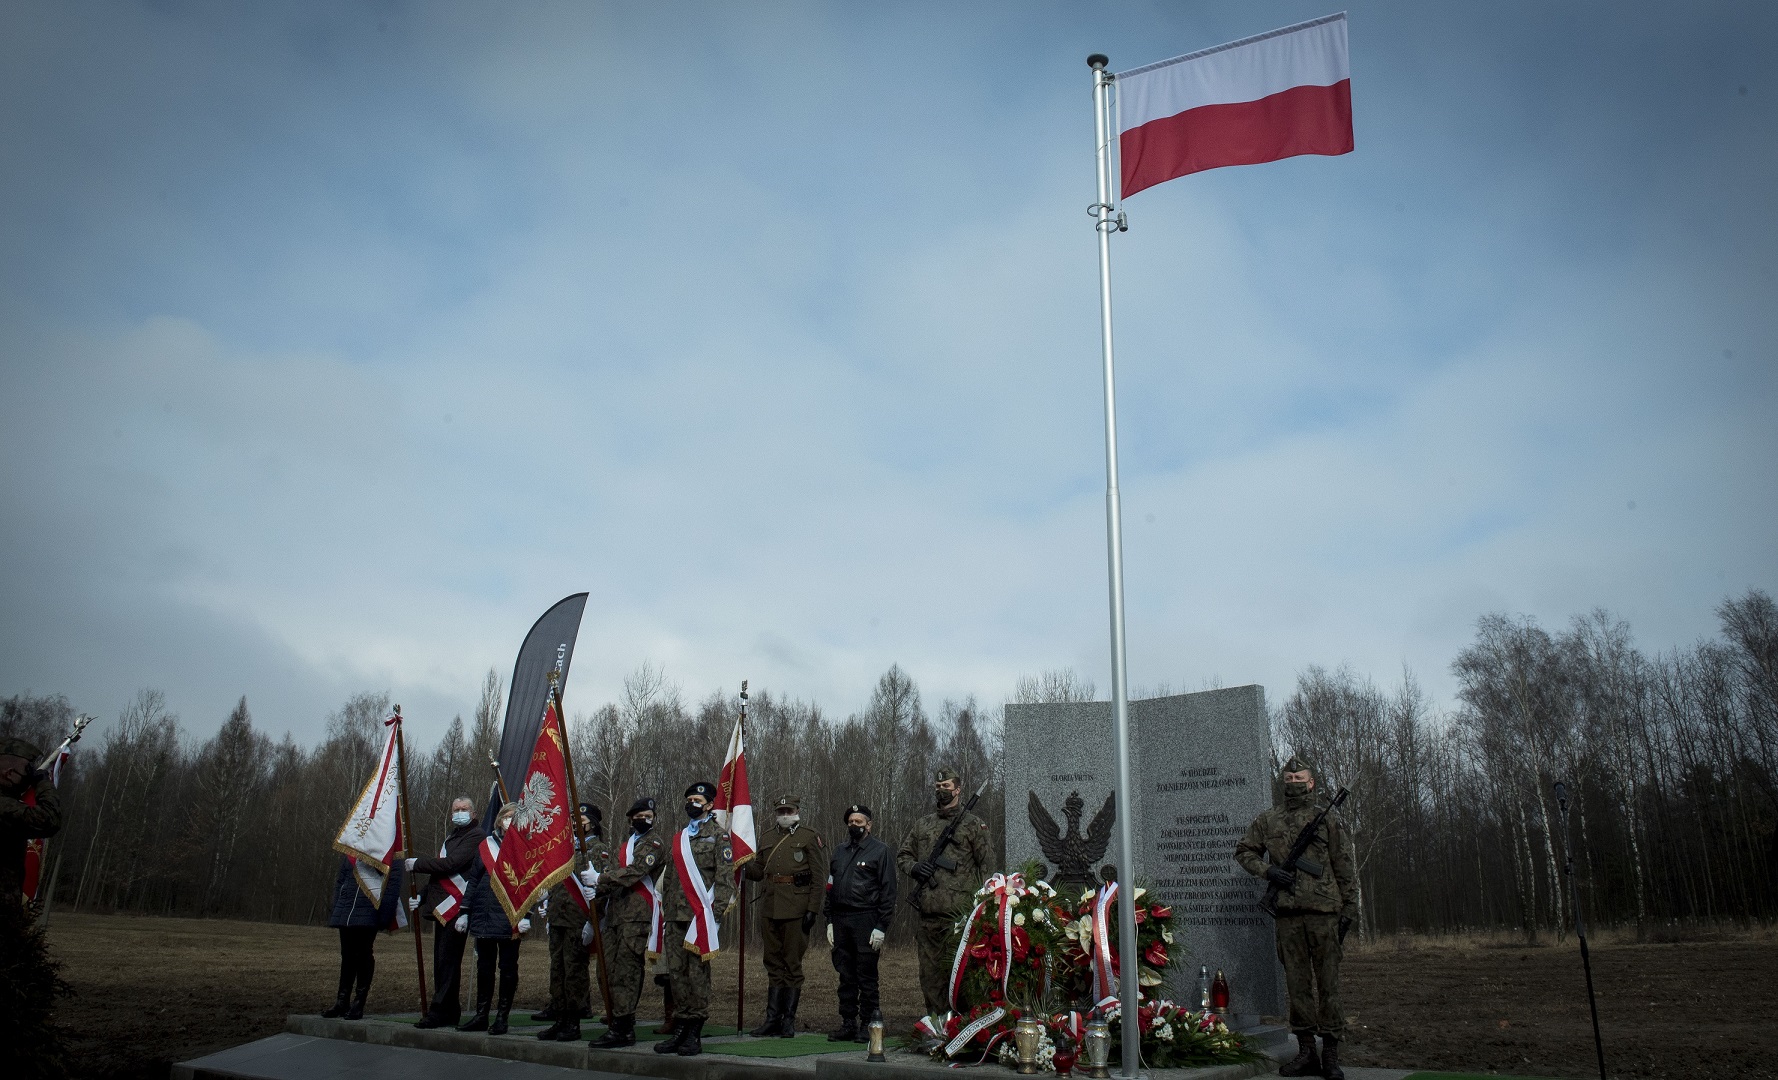 Wojewódzkie obchody Narodowego Dnia Pamięci Żołnierzy Wyklętych w Katowicach. Fot. K. Liszka